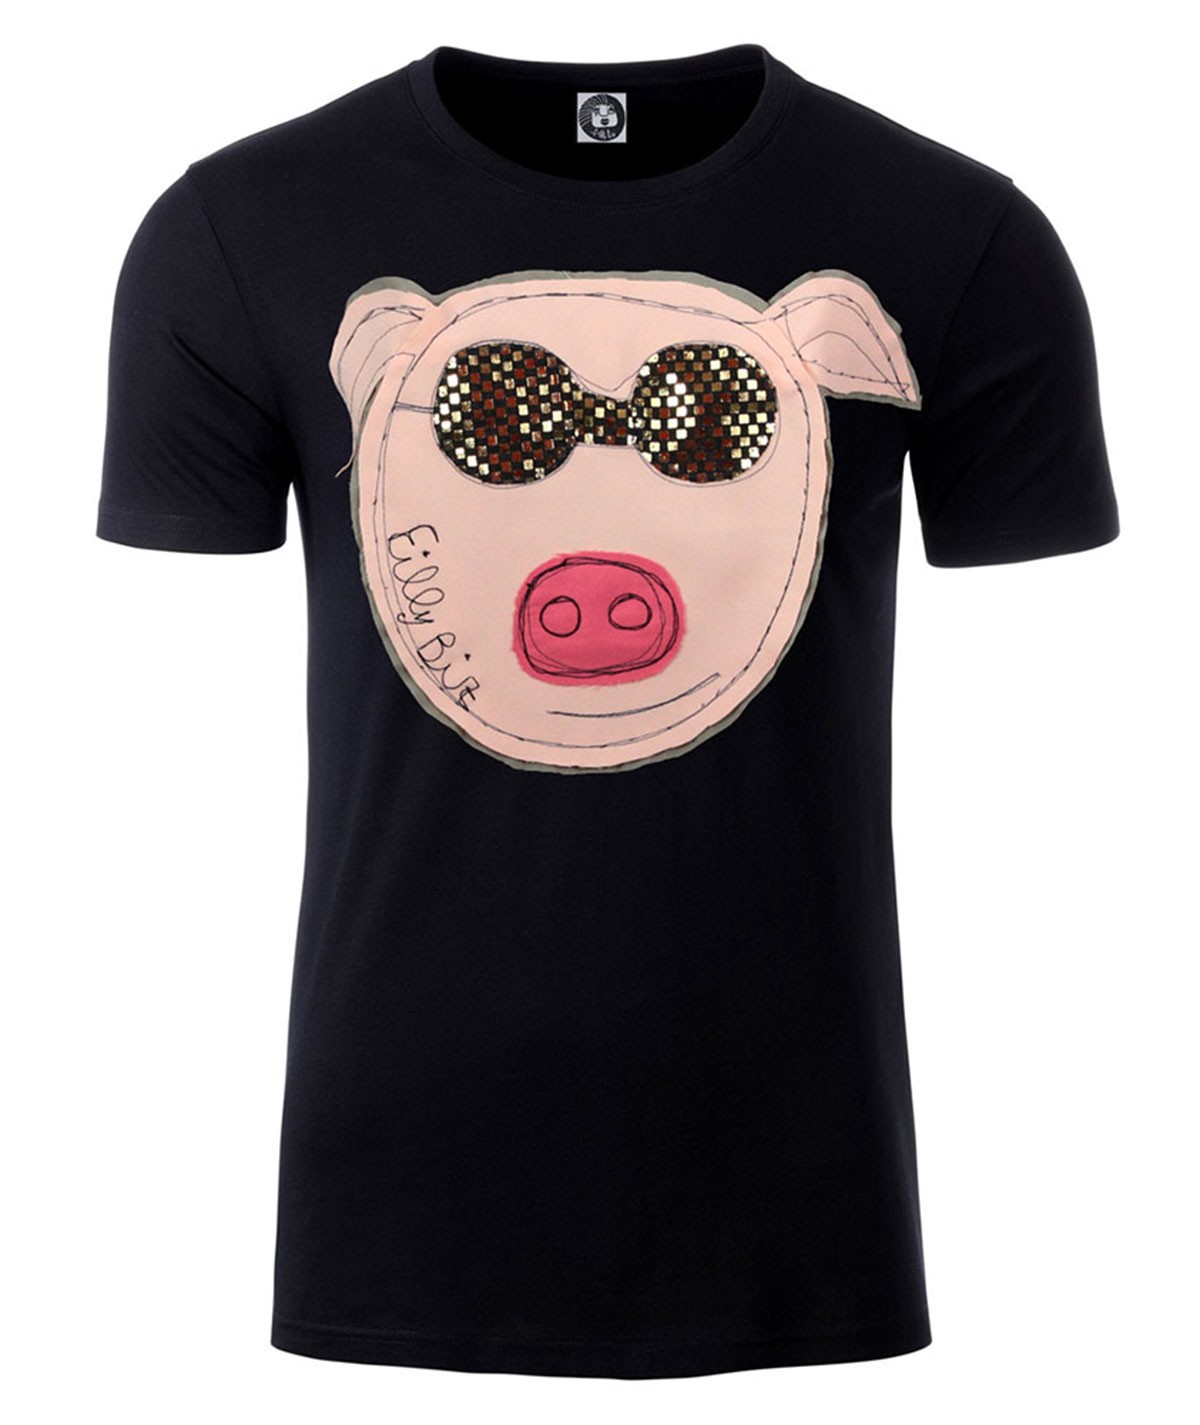 Pig T-shirt